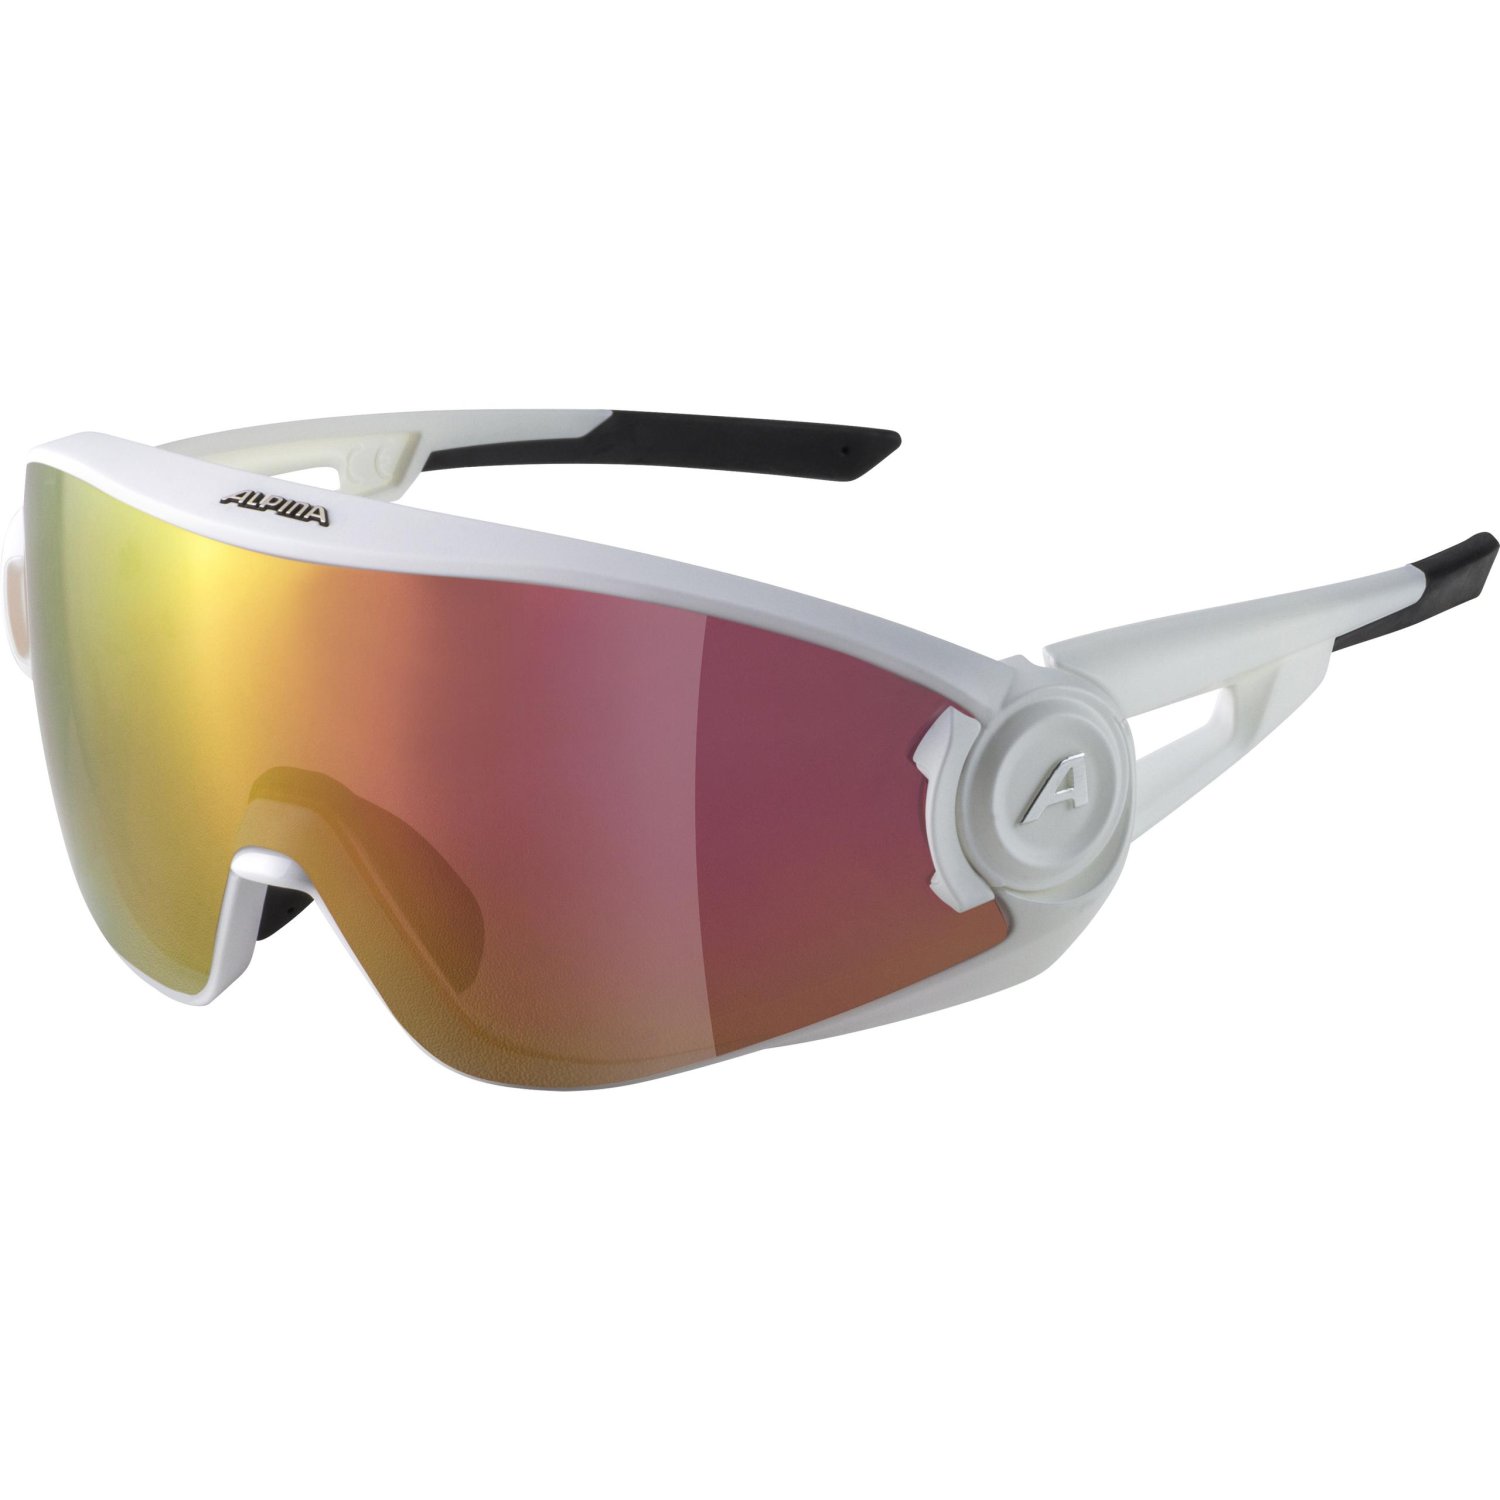 Очки велосипедные Alpina 5W1NG Q+VM, солнцезащитные, White Matt/Red Mirror, 2021, A8653510 очки велосипедные alpina levity белый a85153 10